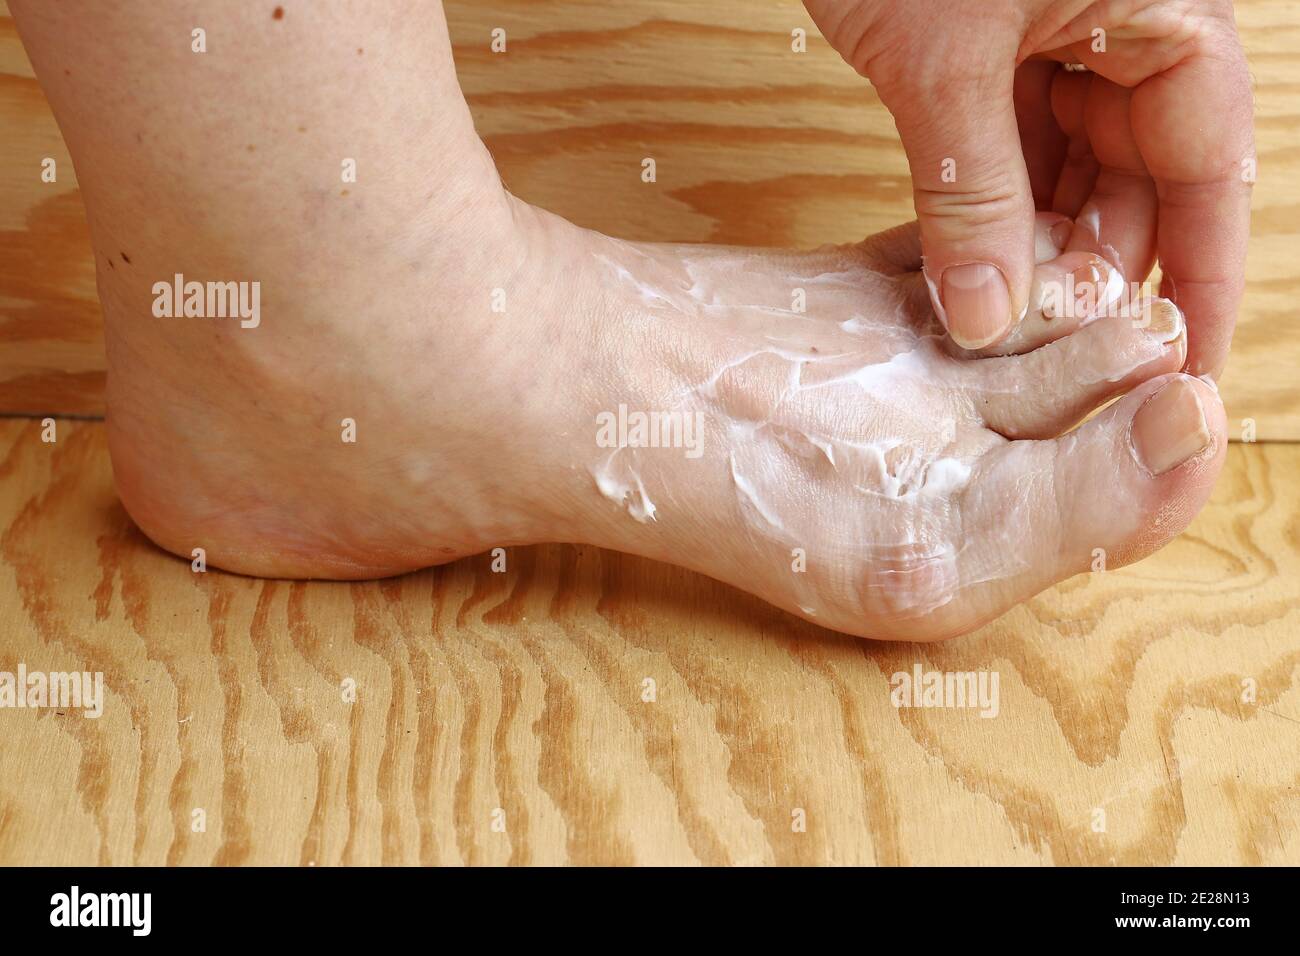 Une femme met de la crème sur son pied. Crème de pied contre la peau sèche et la cornée sur le pied. Crème contre le pied de l'athlète Banque D'Images